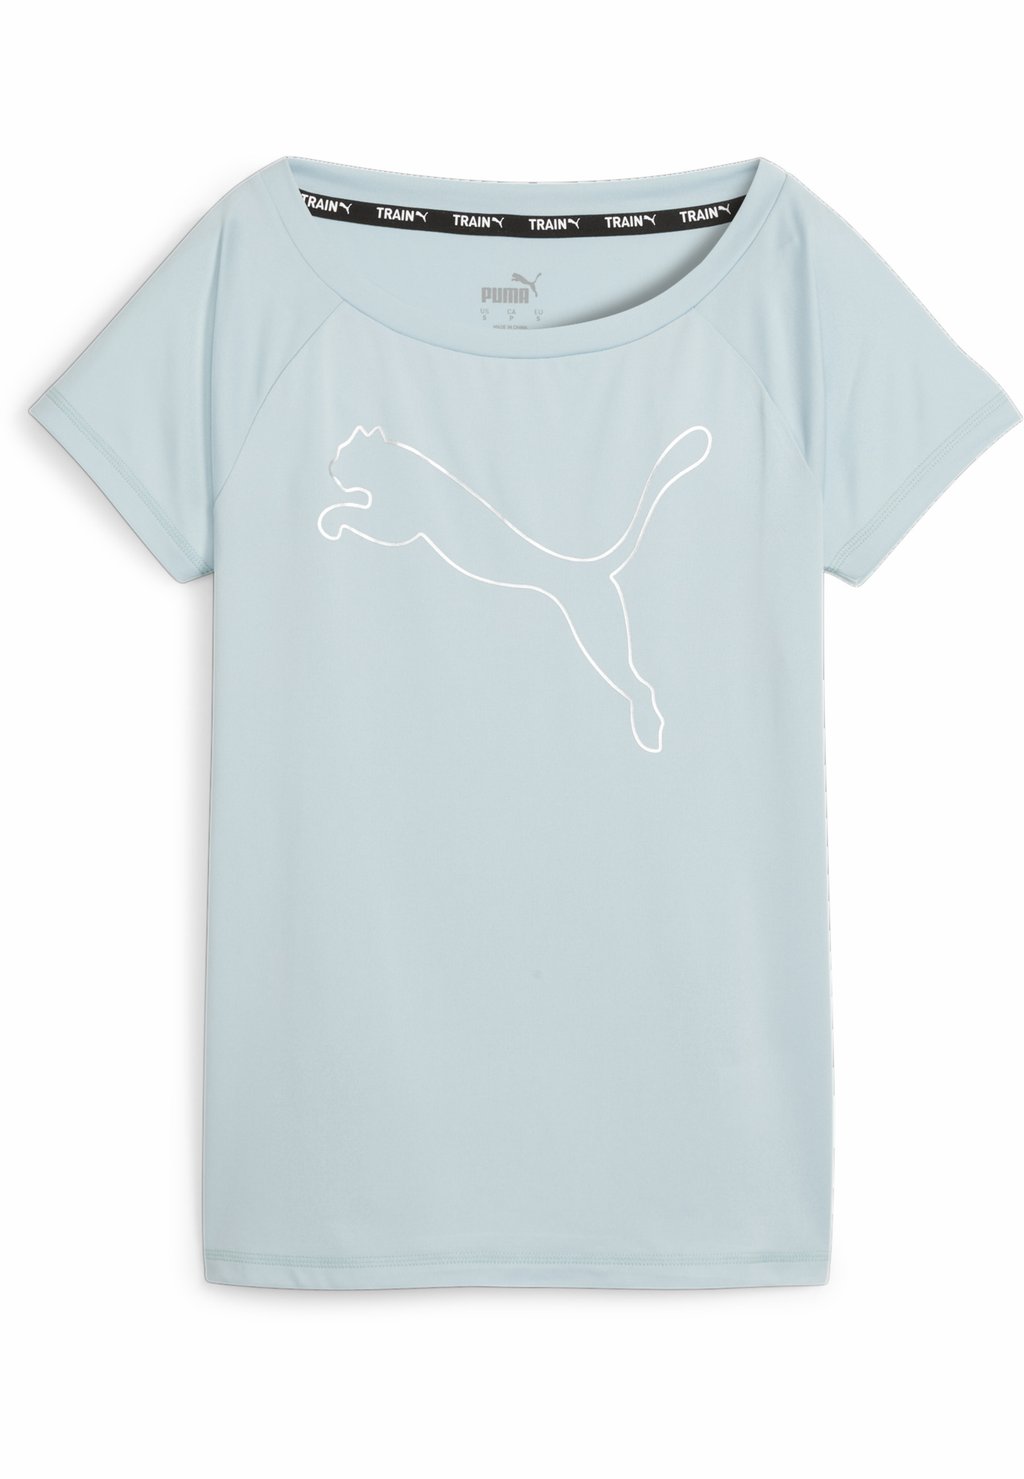 Спортивная футболка TRAIN FAVORITE CAT Puma, цвет turquoise surf спортивная футболка train favorite heather cat tee puma цвет grape mist